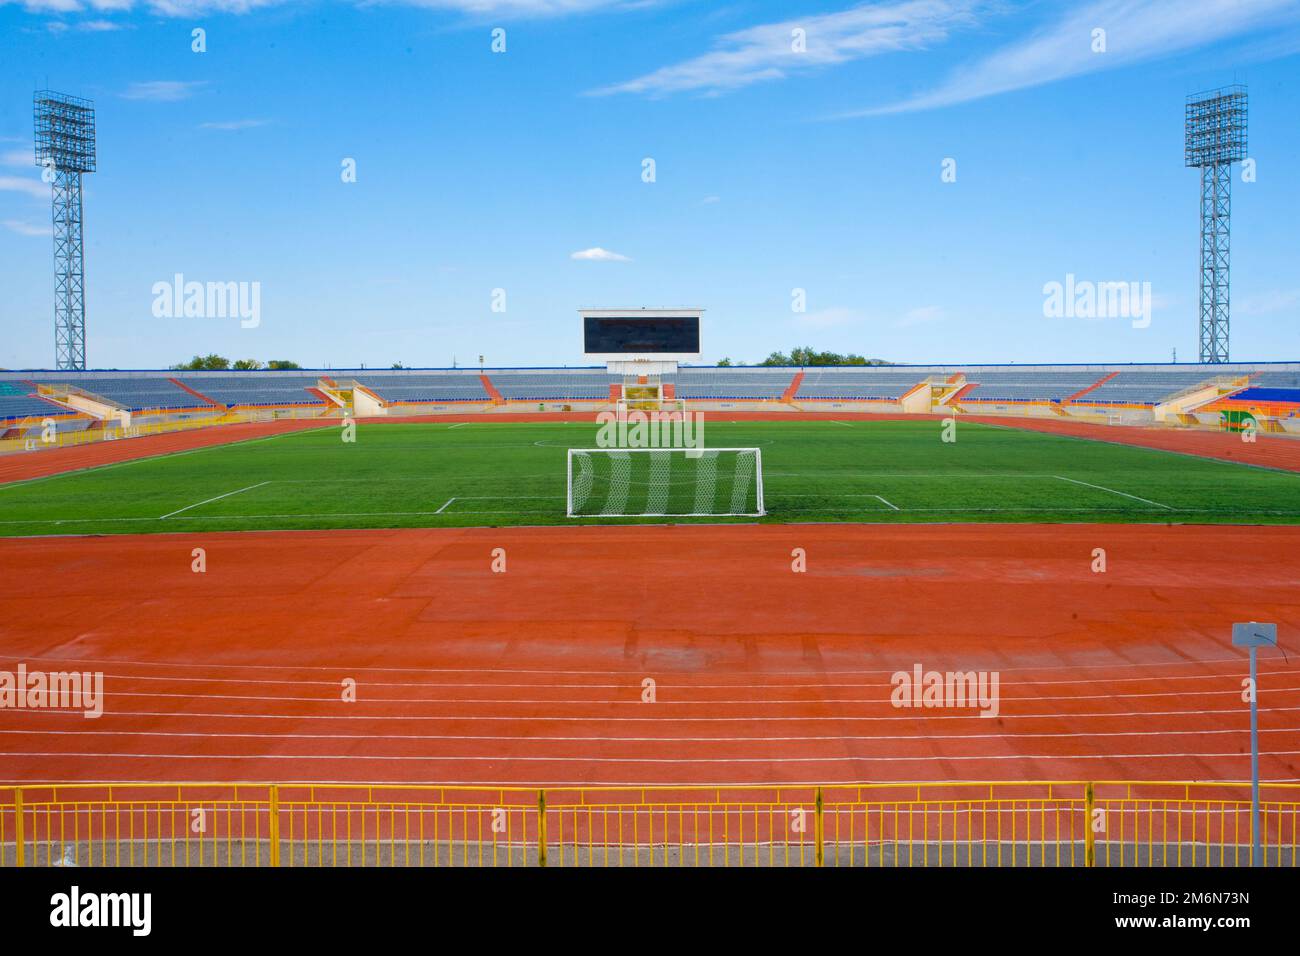 STADION - Fußballfeld mit Tor und tablo am blauen Himmel Stockfoto